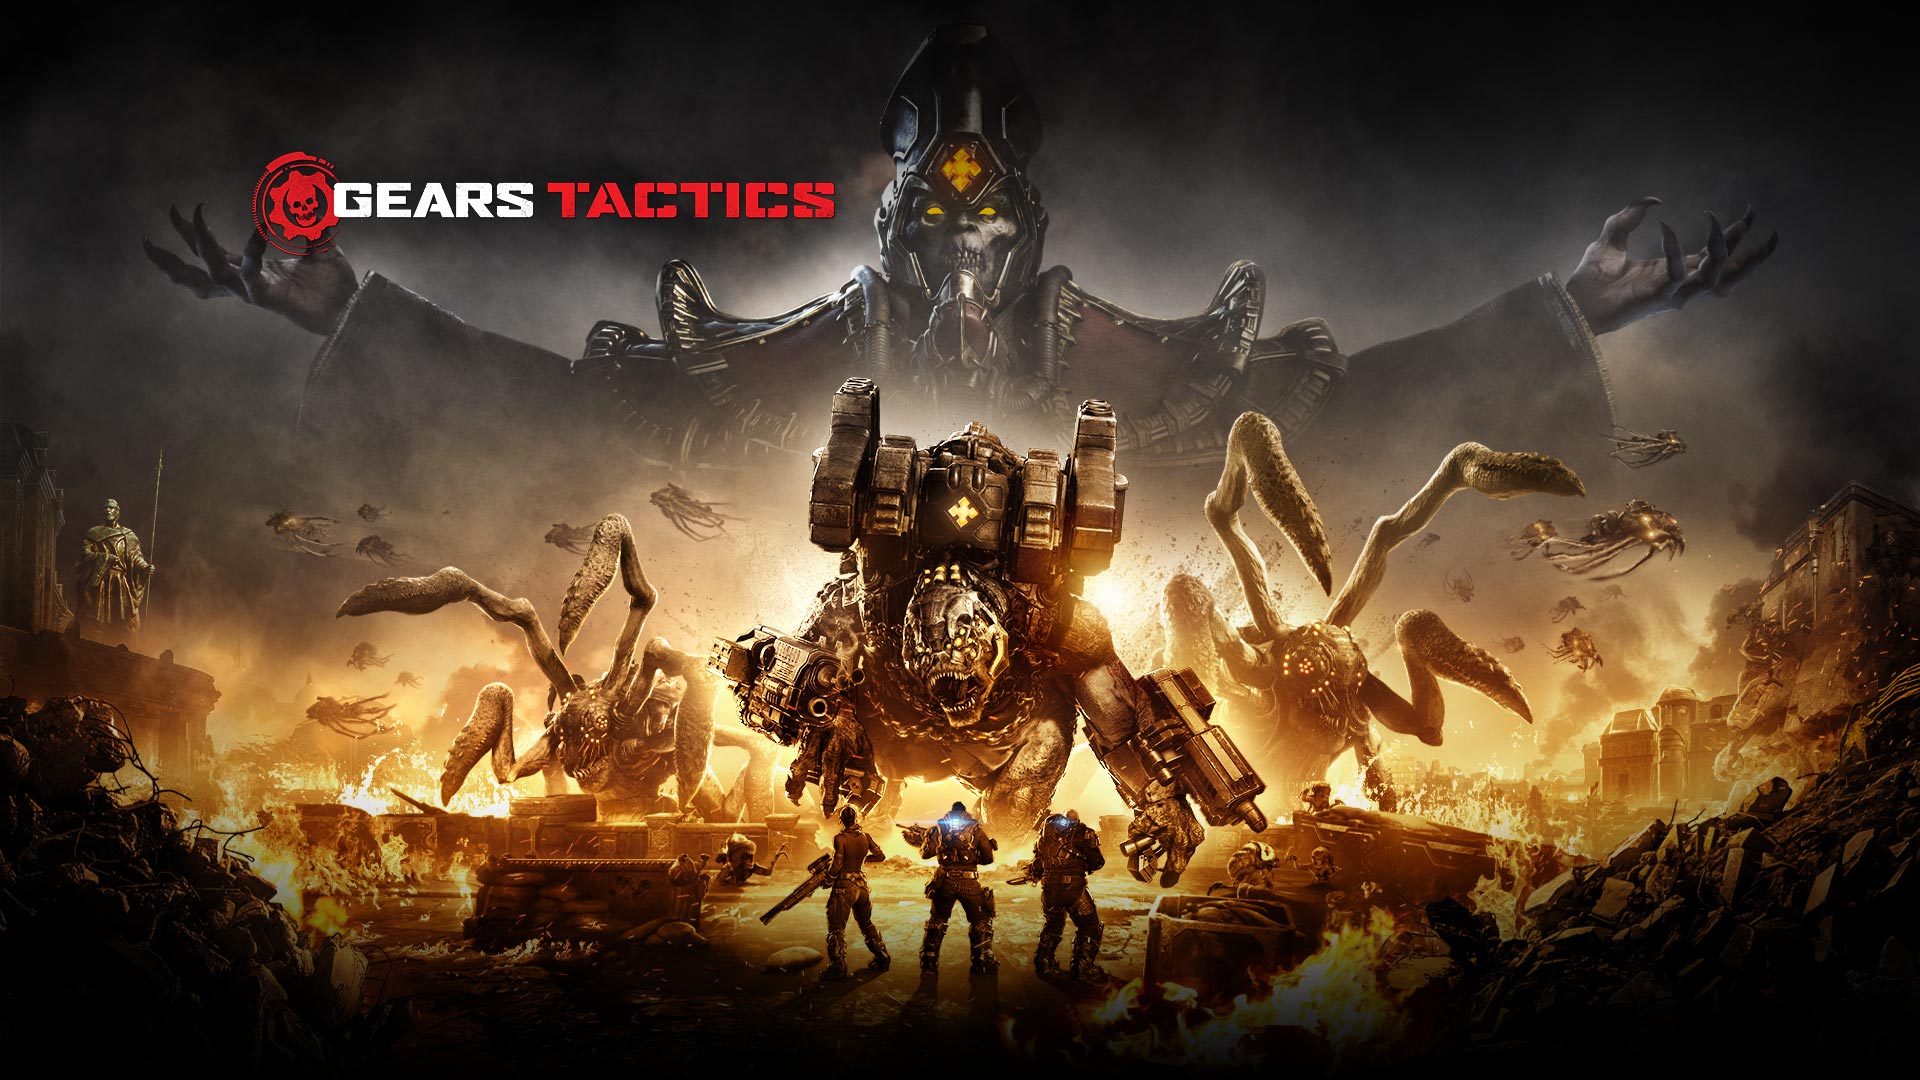 Logo Gears Tactics, scena przedstawiająca trzy postaci, które szykują się do walki z kilkoma dużymi potworami, podczas gdy arena wokół nich płonie